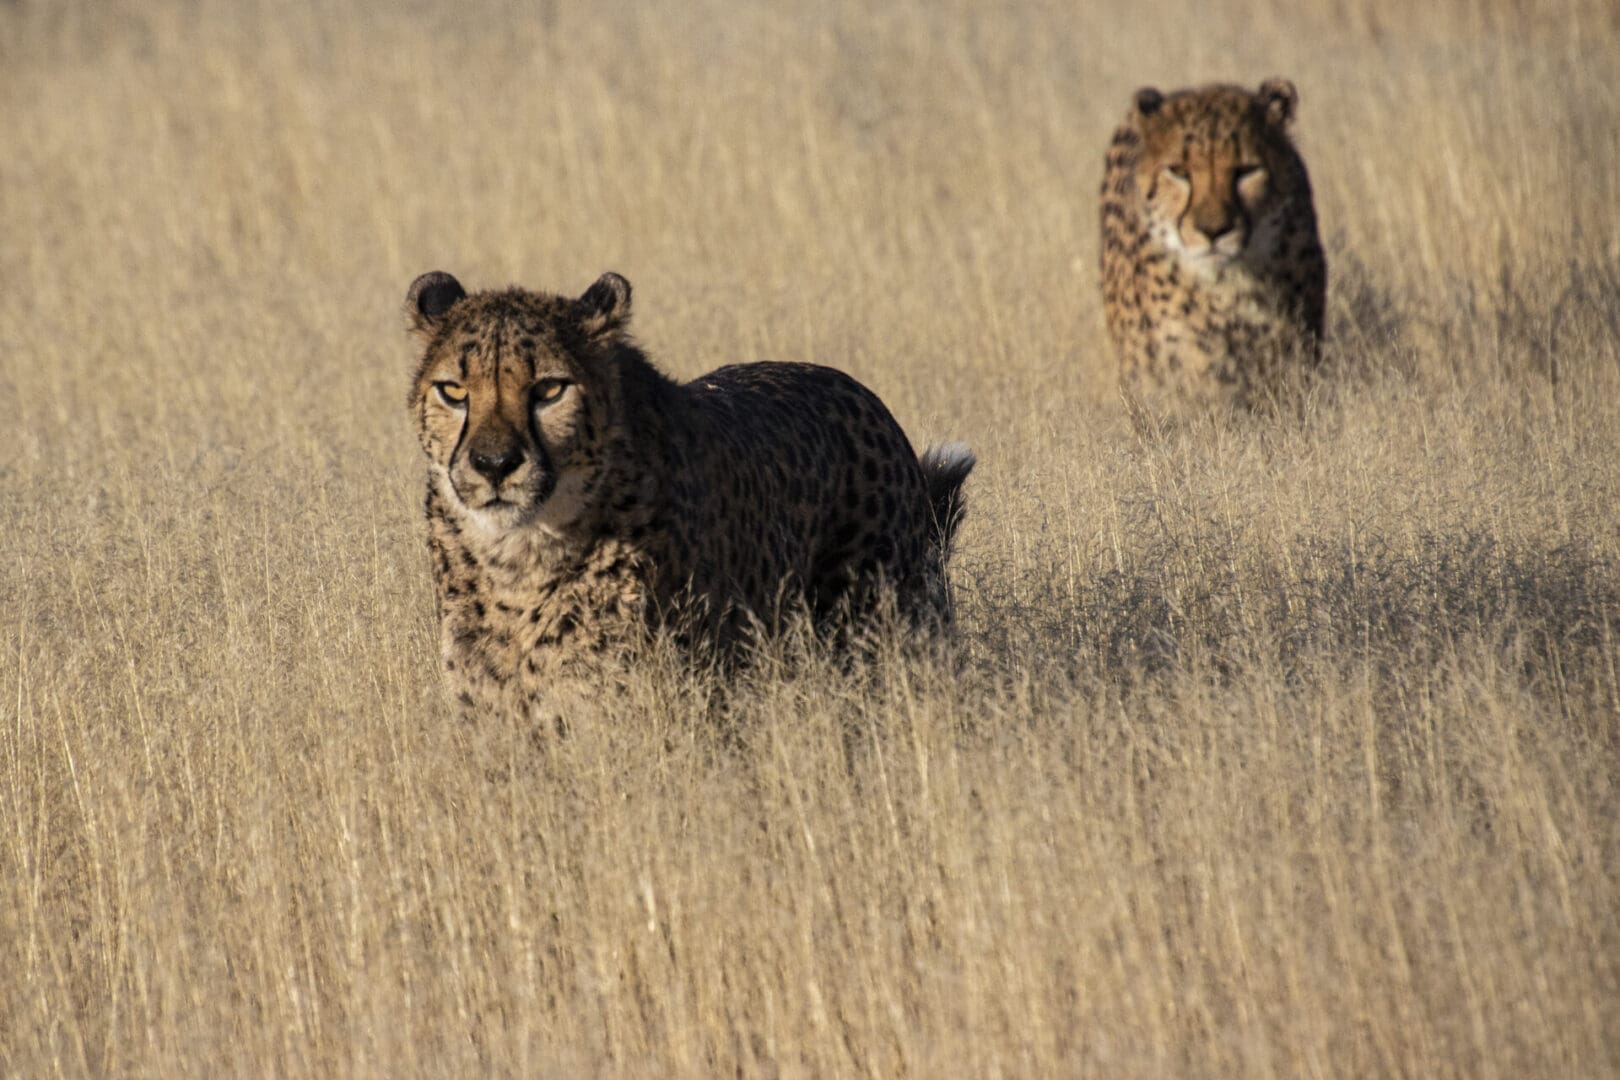 Two cheetahs walking through tall grass.